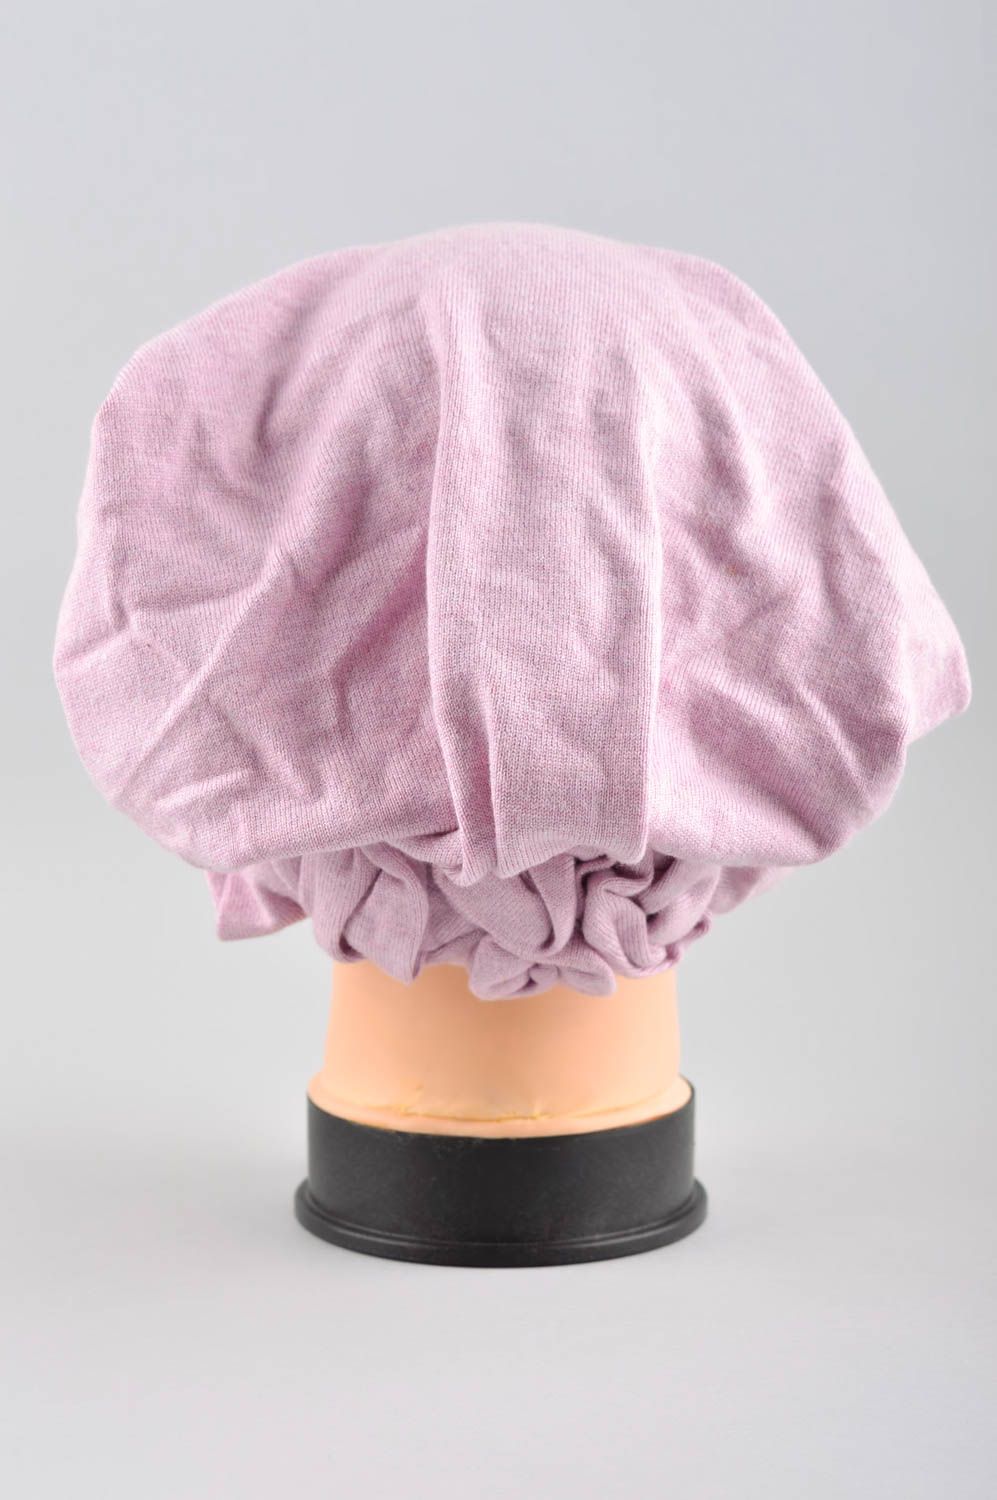 Bonnet tombant femme fait main rose en tissu tricoté Couvre-chef femme photo 3